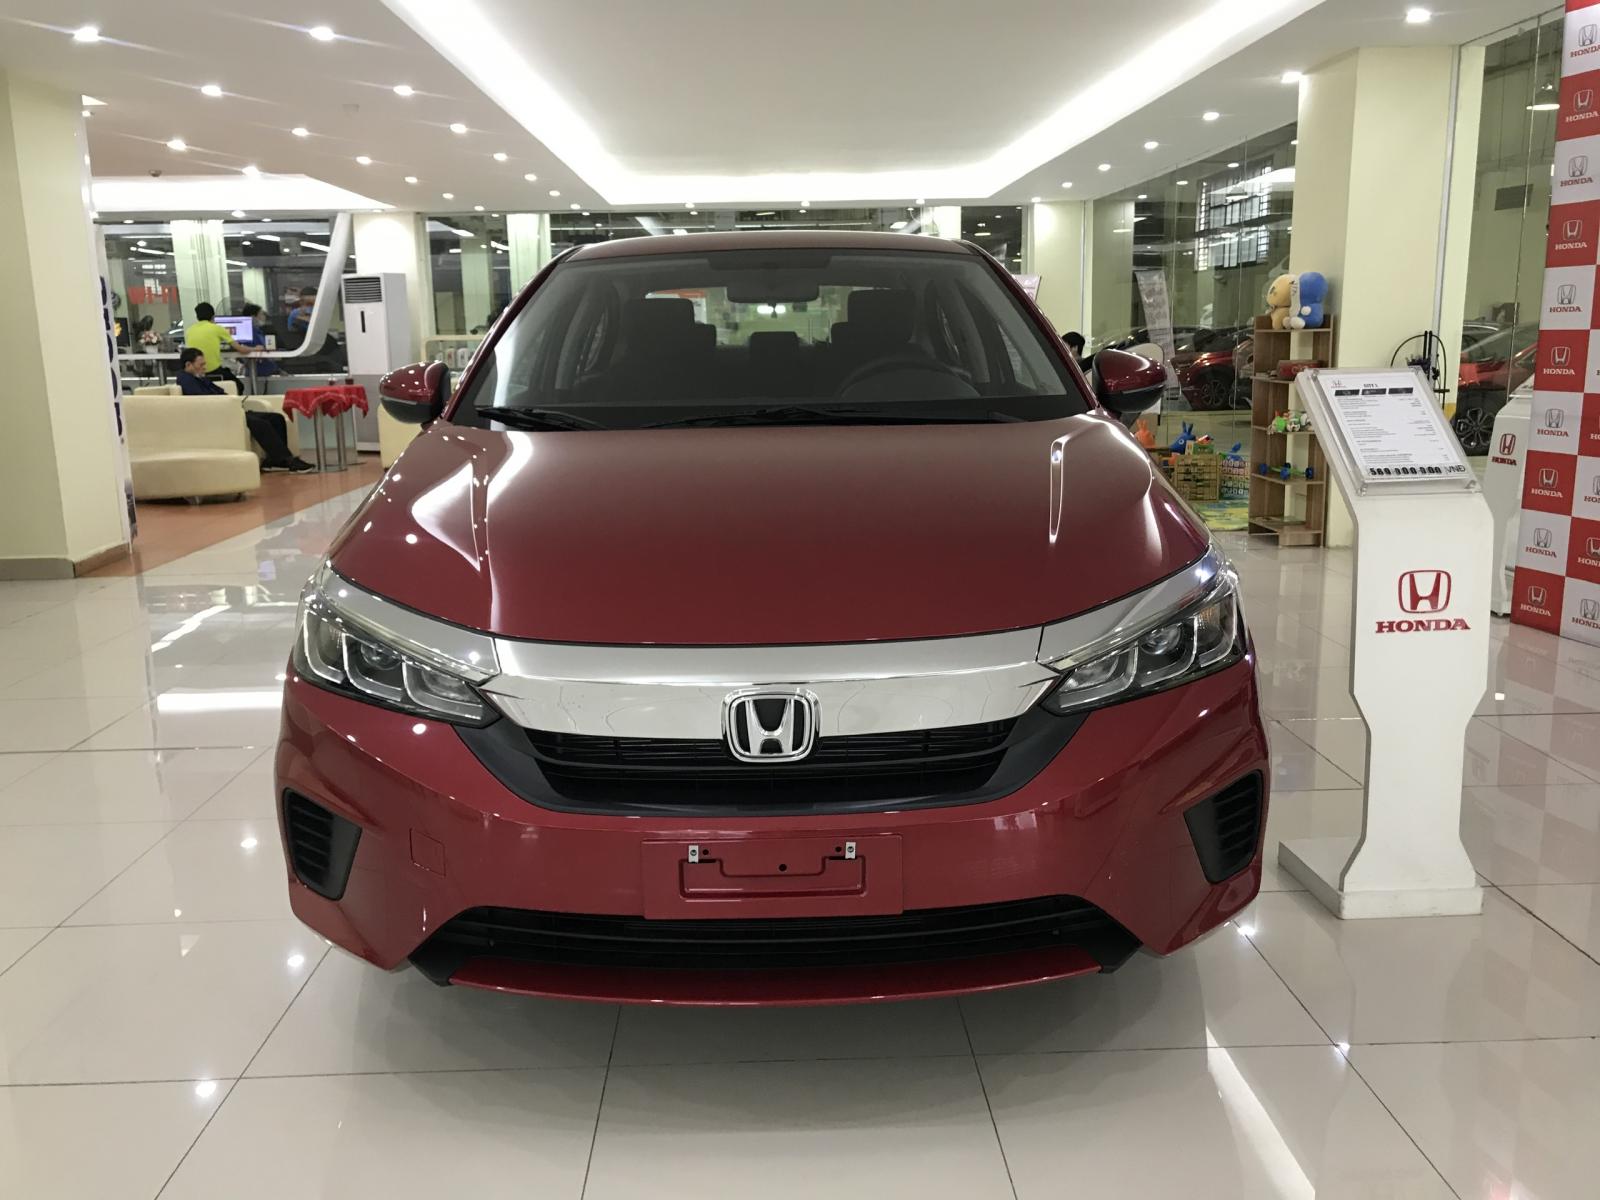 Honda Giải Phóng - Honda City L 2021 mới, khuyến mại tiền mặt và phụ kiện full xe